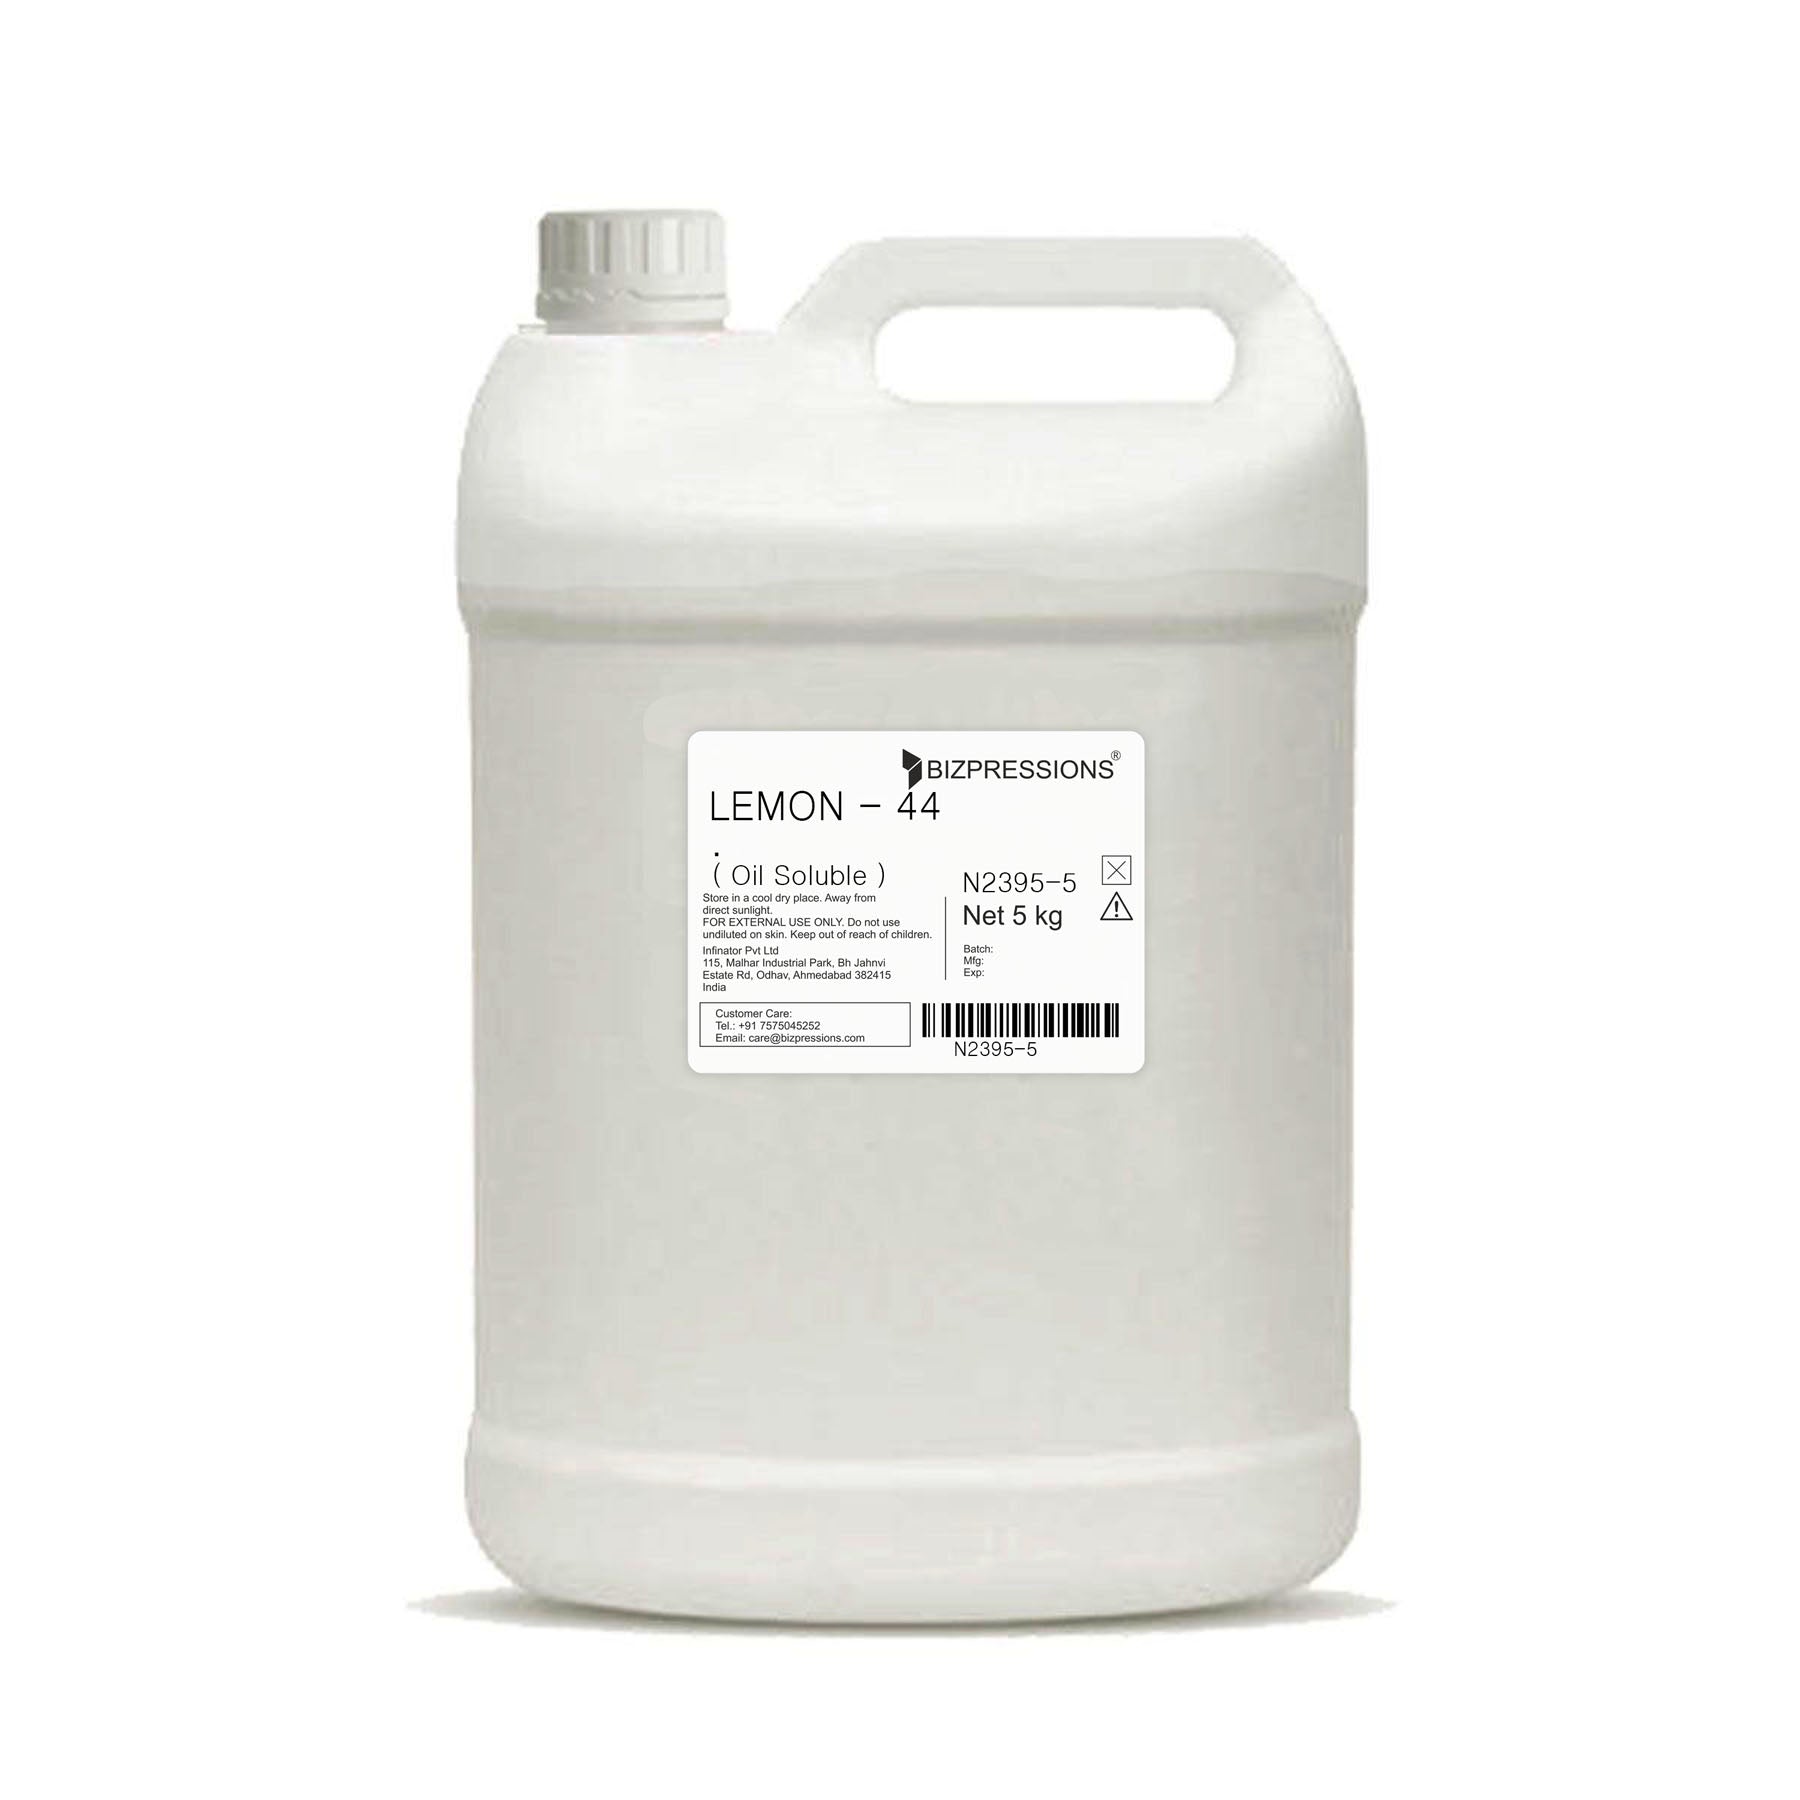 LEMON - 44 - Fragrance ( Oil Soluble ) - 5 kg